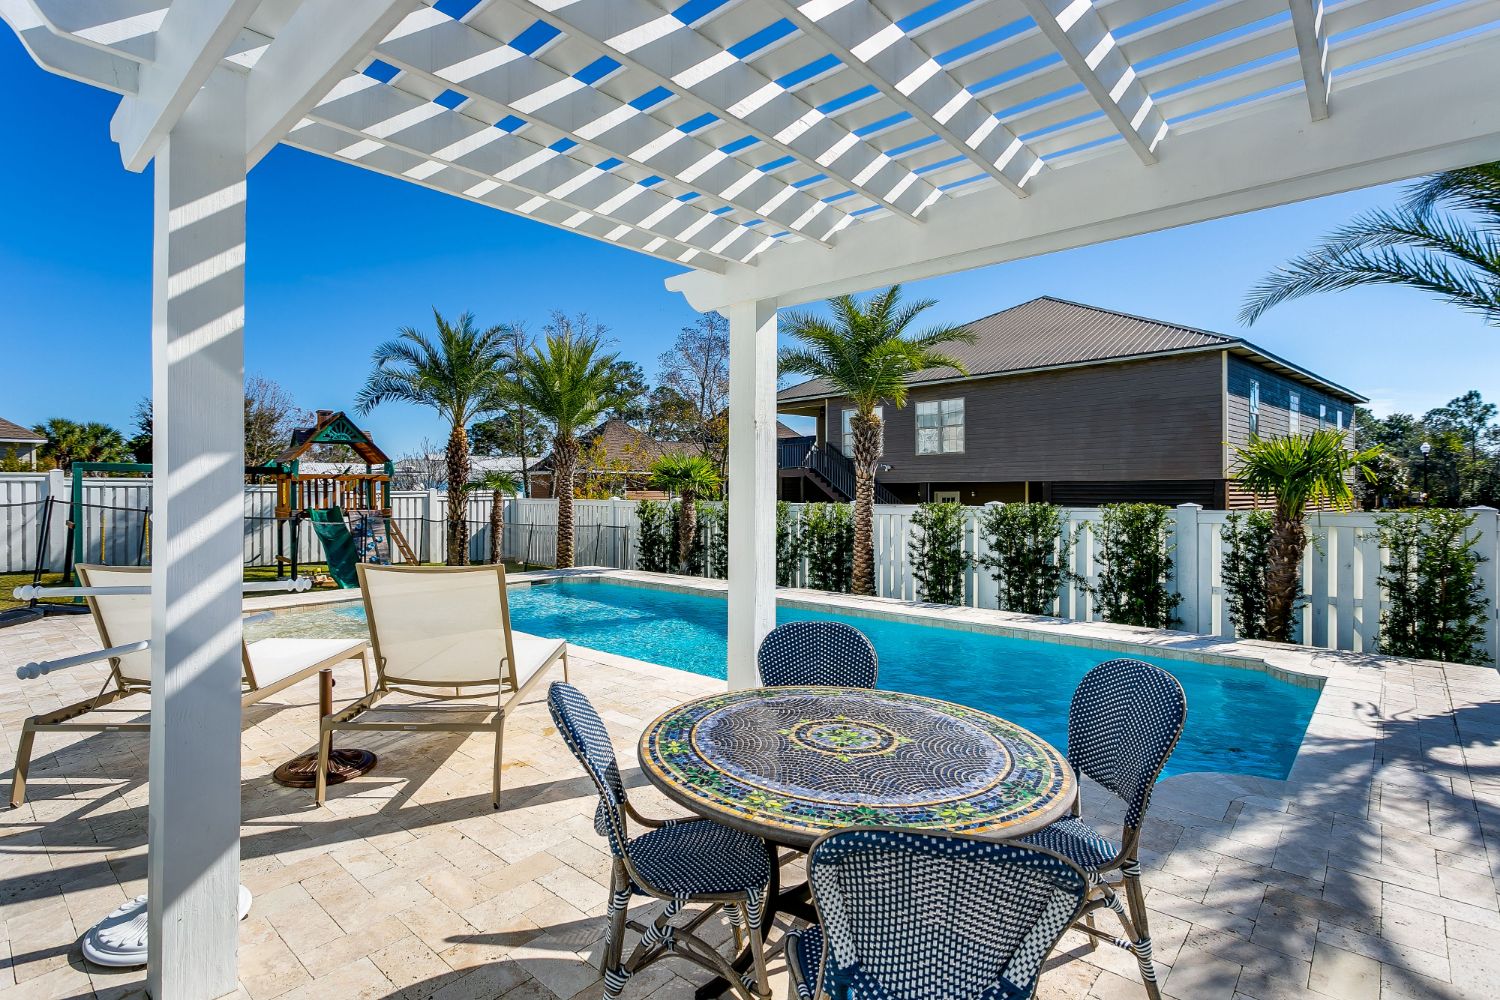 Luxury Inground Pools - Luxury Pool Builders Alabama, Luxury Pool Contractors Florida, Luxury Pool Designs Mississippi